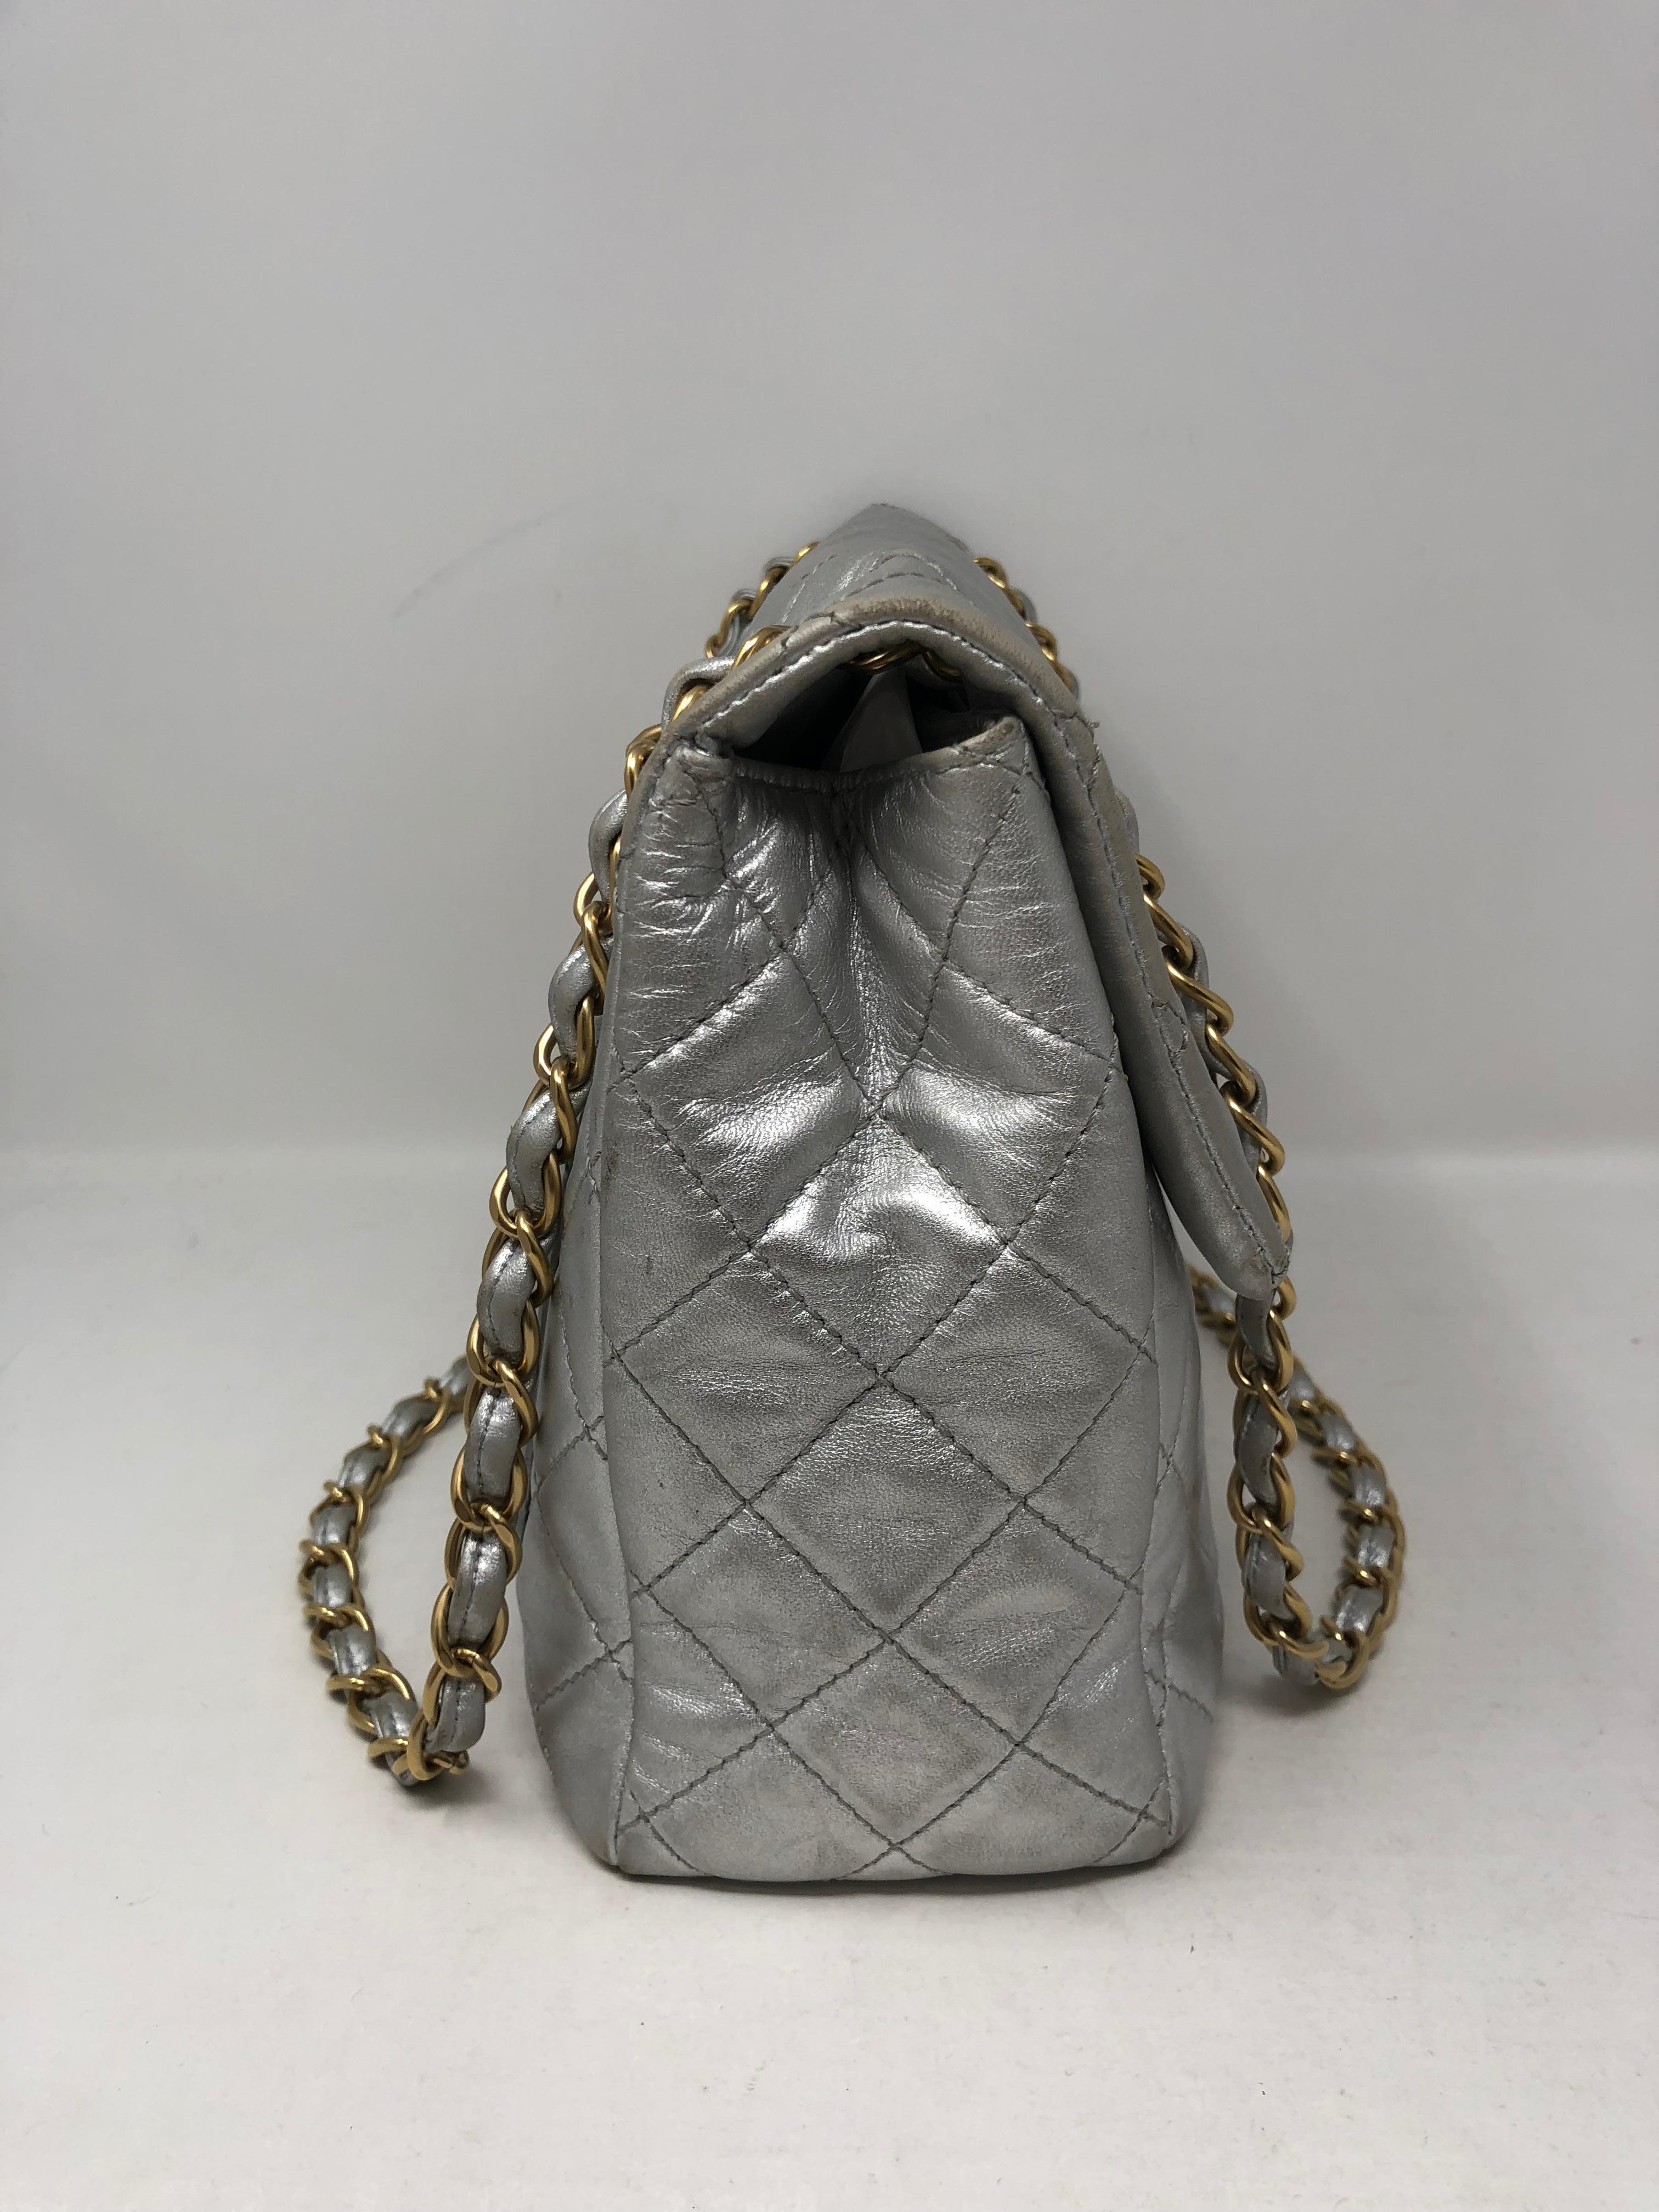 Chanel Silver Metallic Jumbo Bag 7